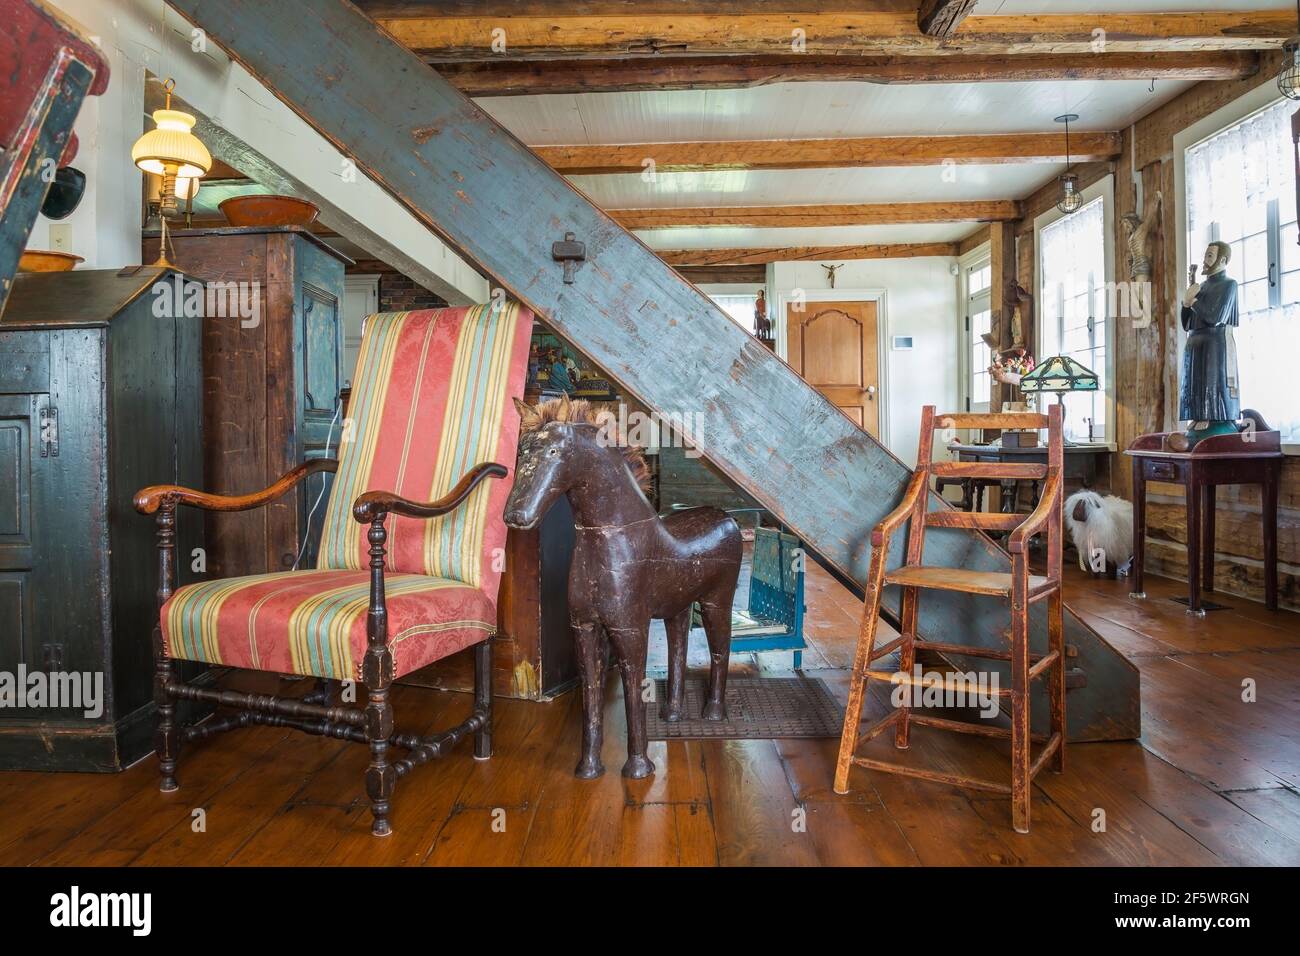 Poltroncina in legno antico rivestita a strisce rosse, blu acqua e gialle, seggiolone con seduta in legno massiccio, scultura a cavallo in legno nel soggiorno Foto Stock